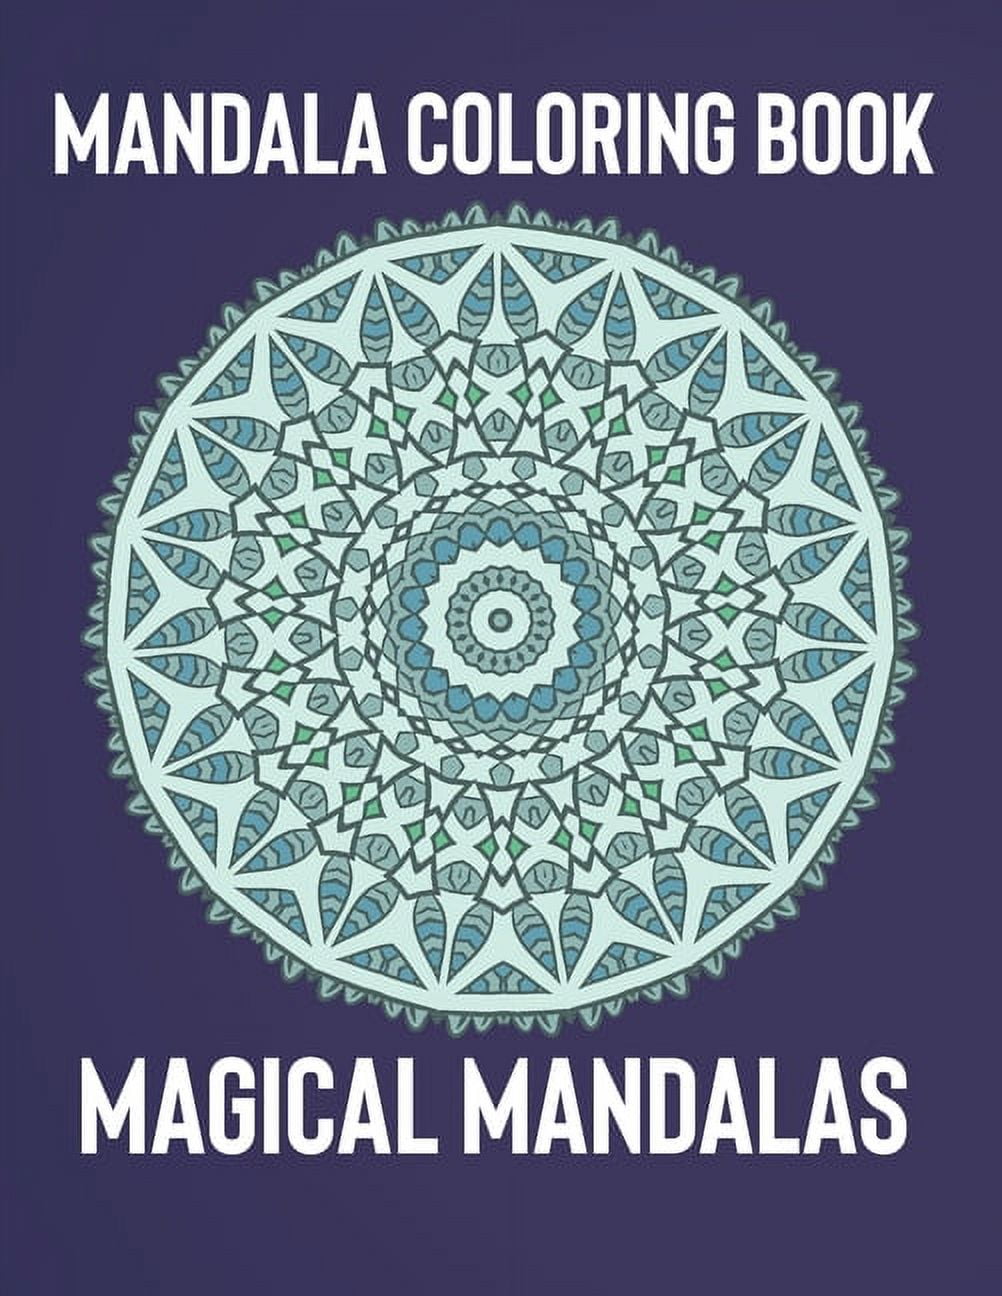 Mandala Coloring Book: Magical Mandalas - An Adult Coloring Book with Fun,  Easy, and Relaxing Mandalas (Paperback)